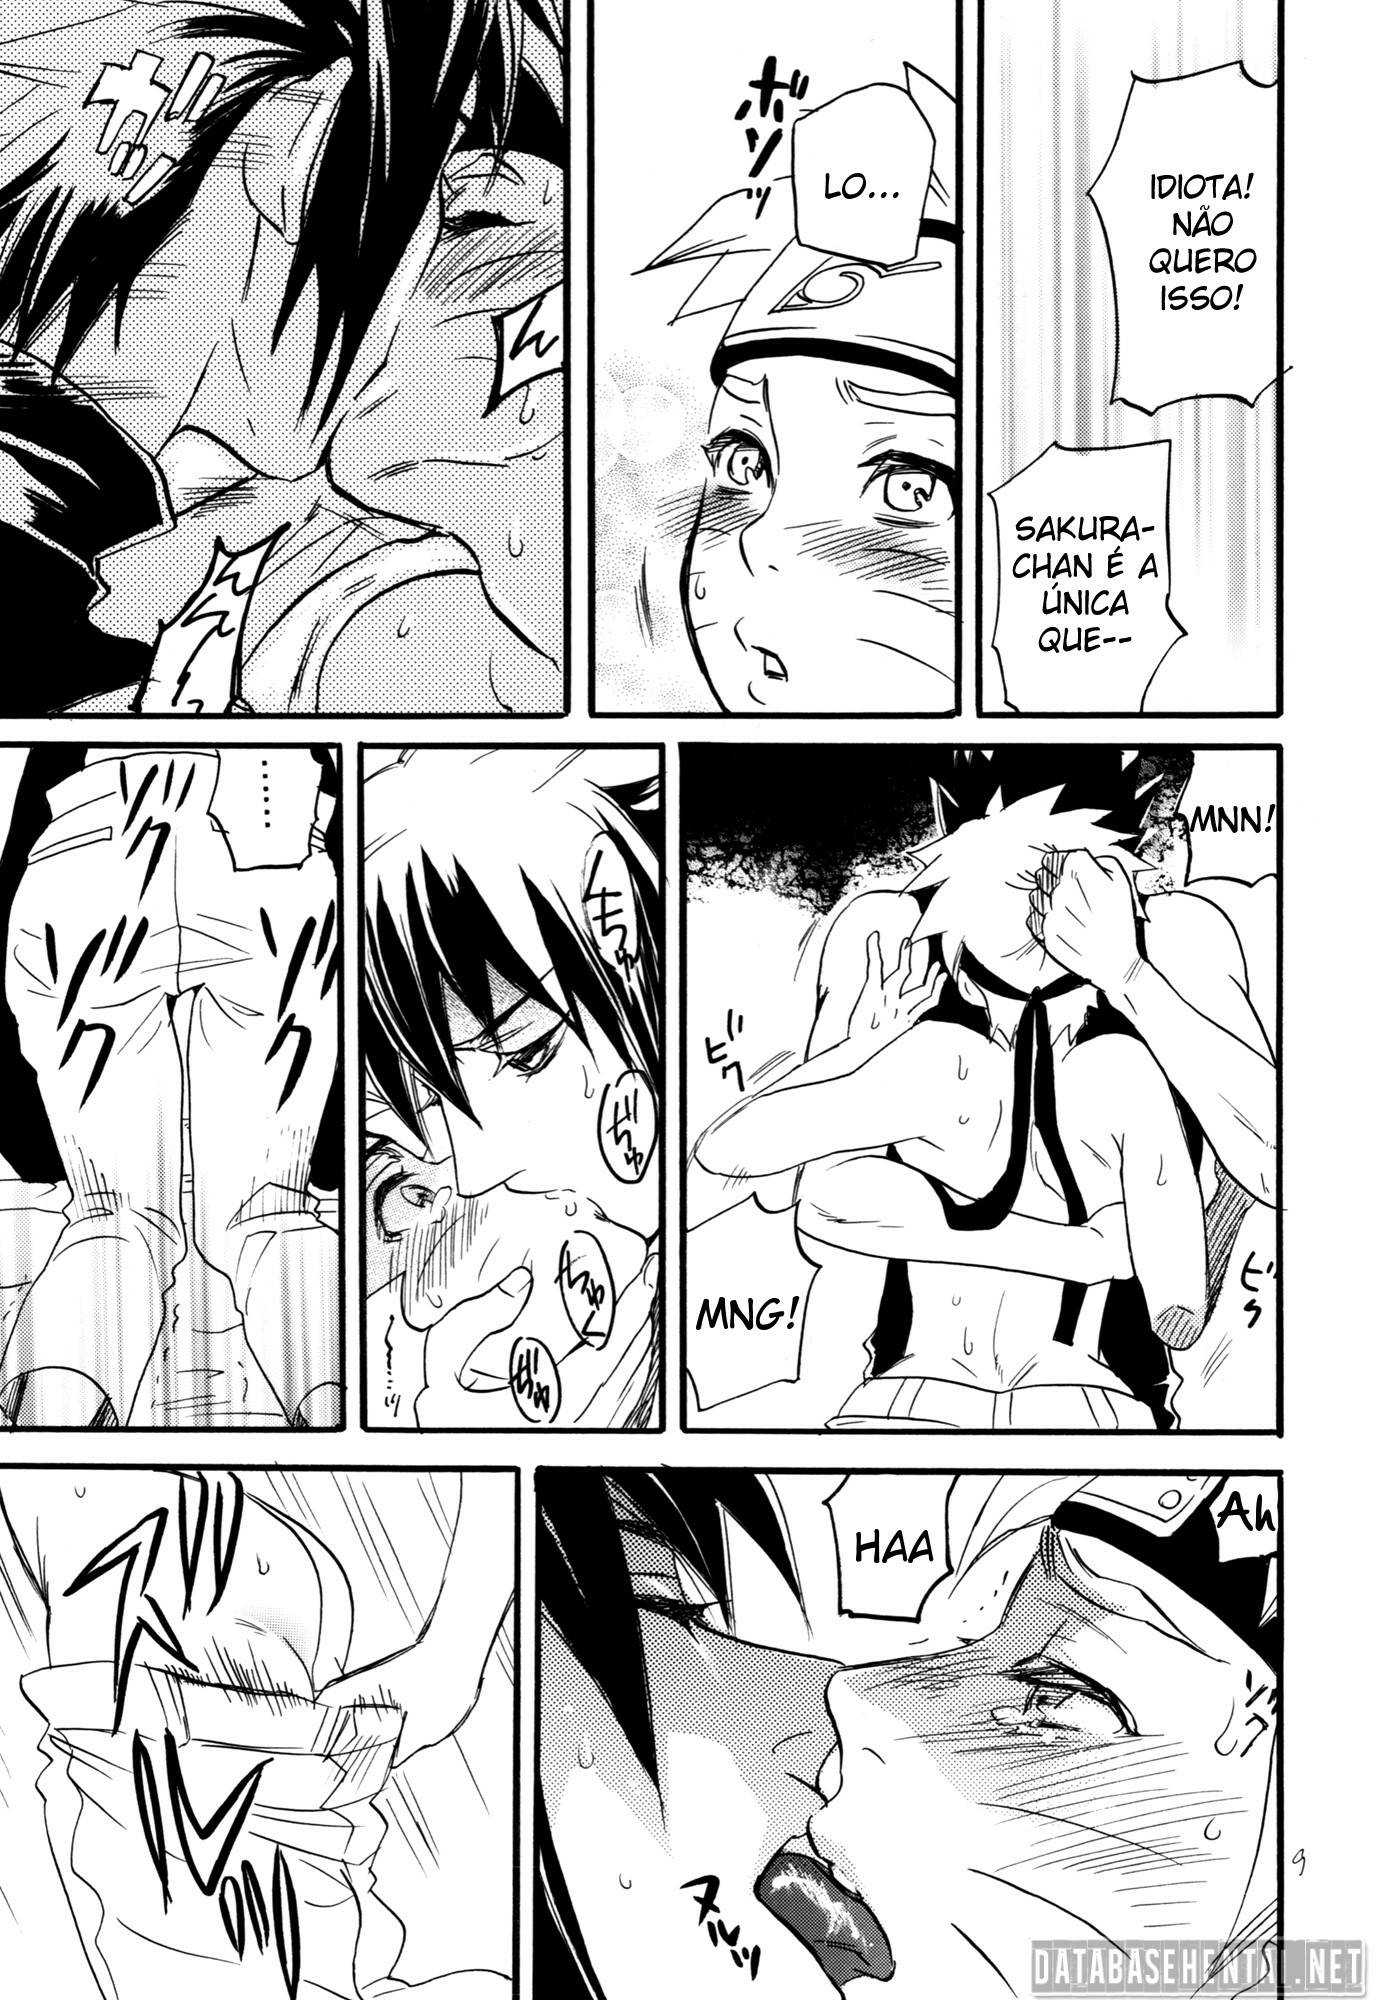 Sasuke comendo o naruto Hentai